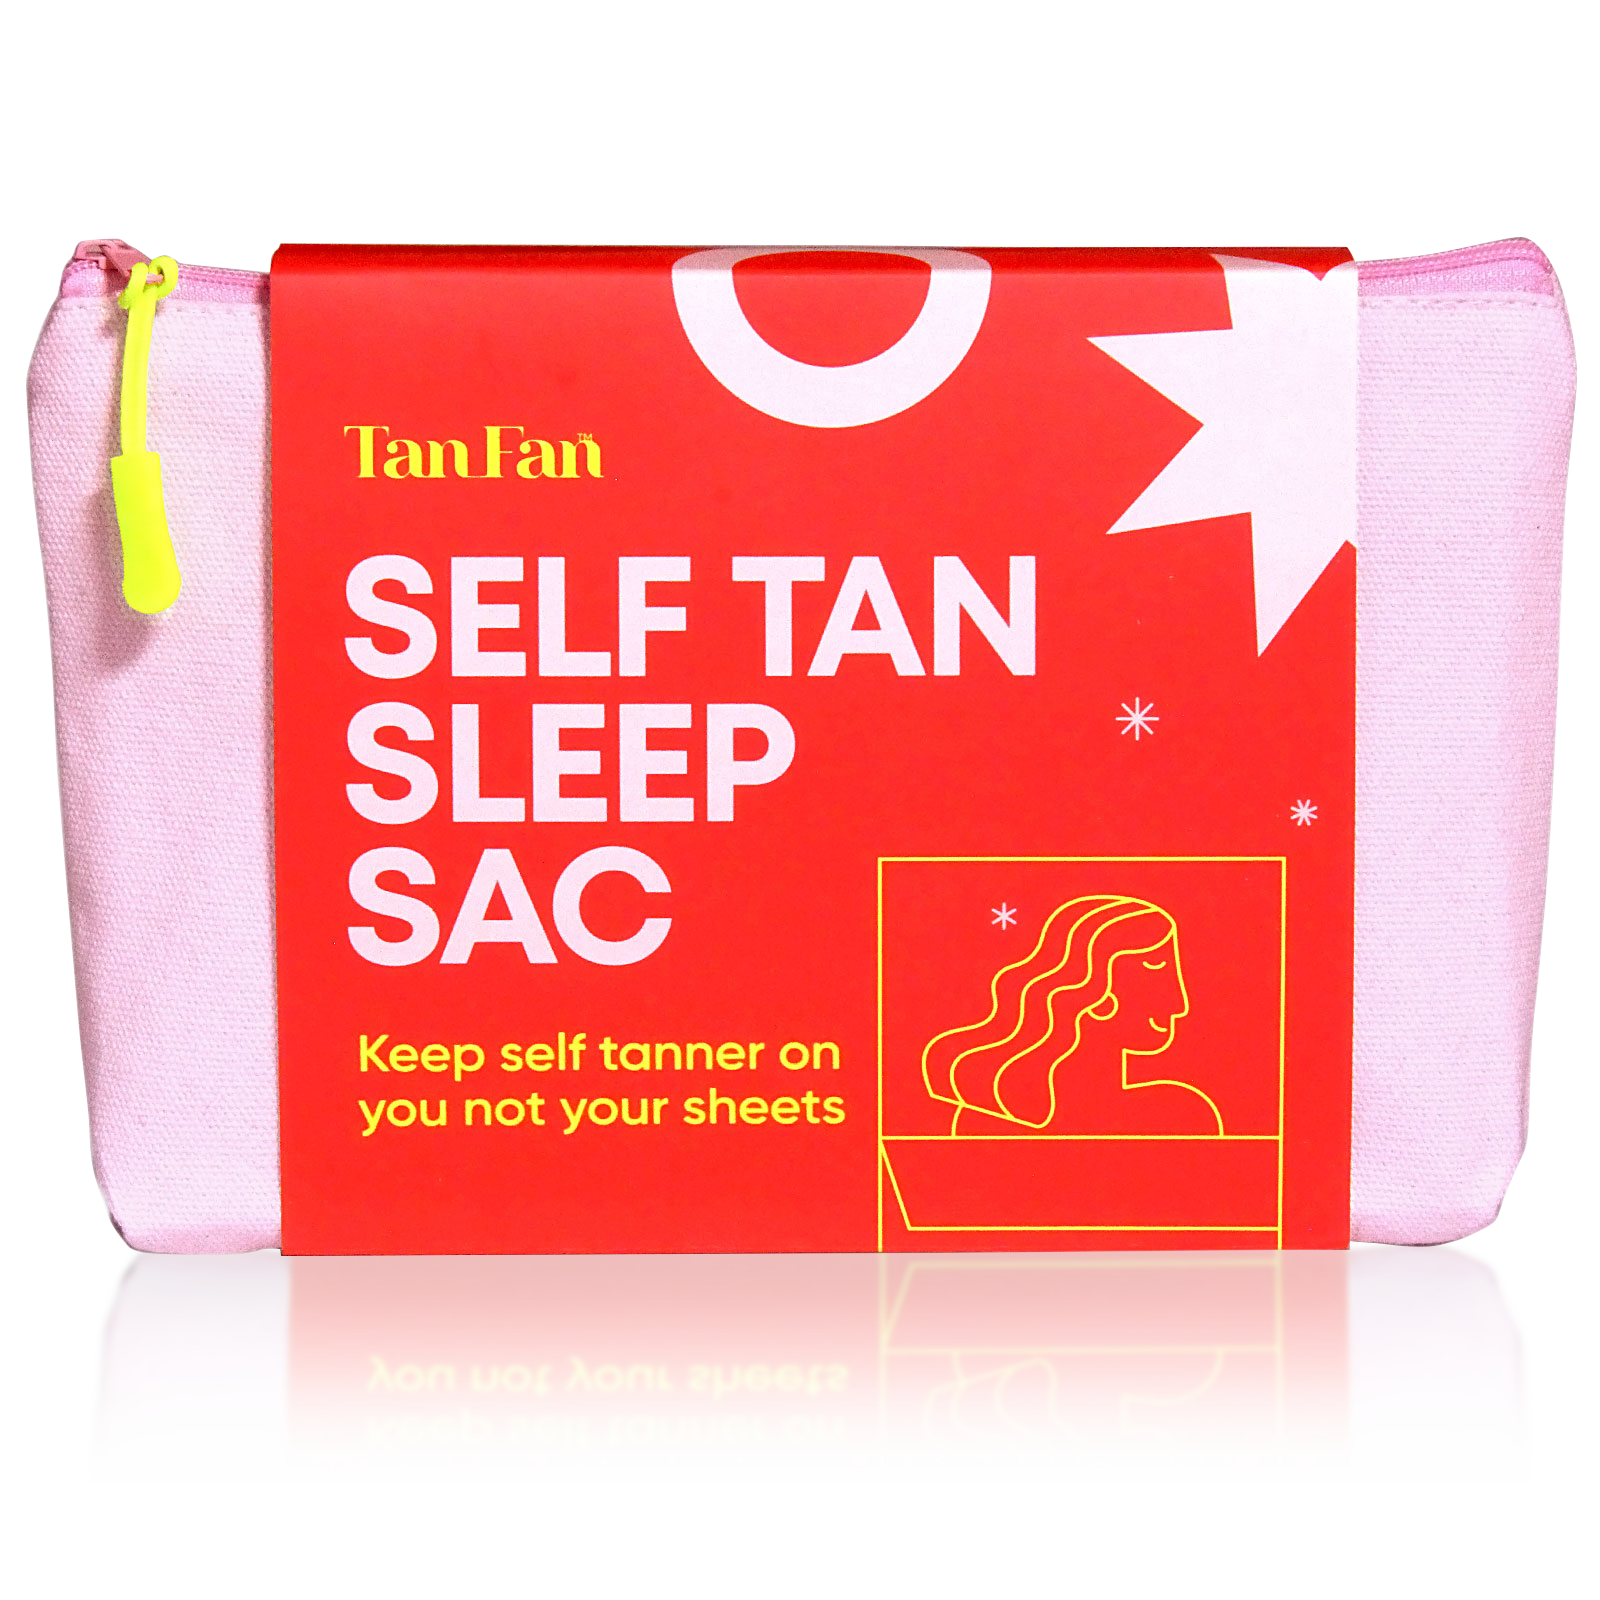 Self Tan Sleep Sac